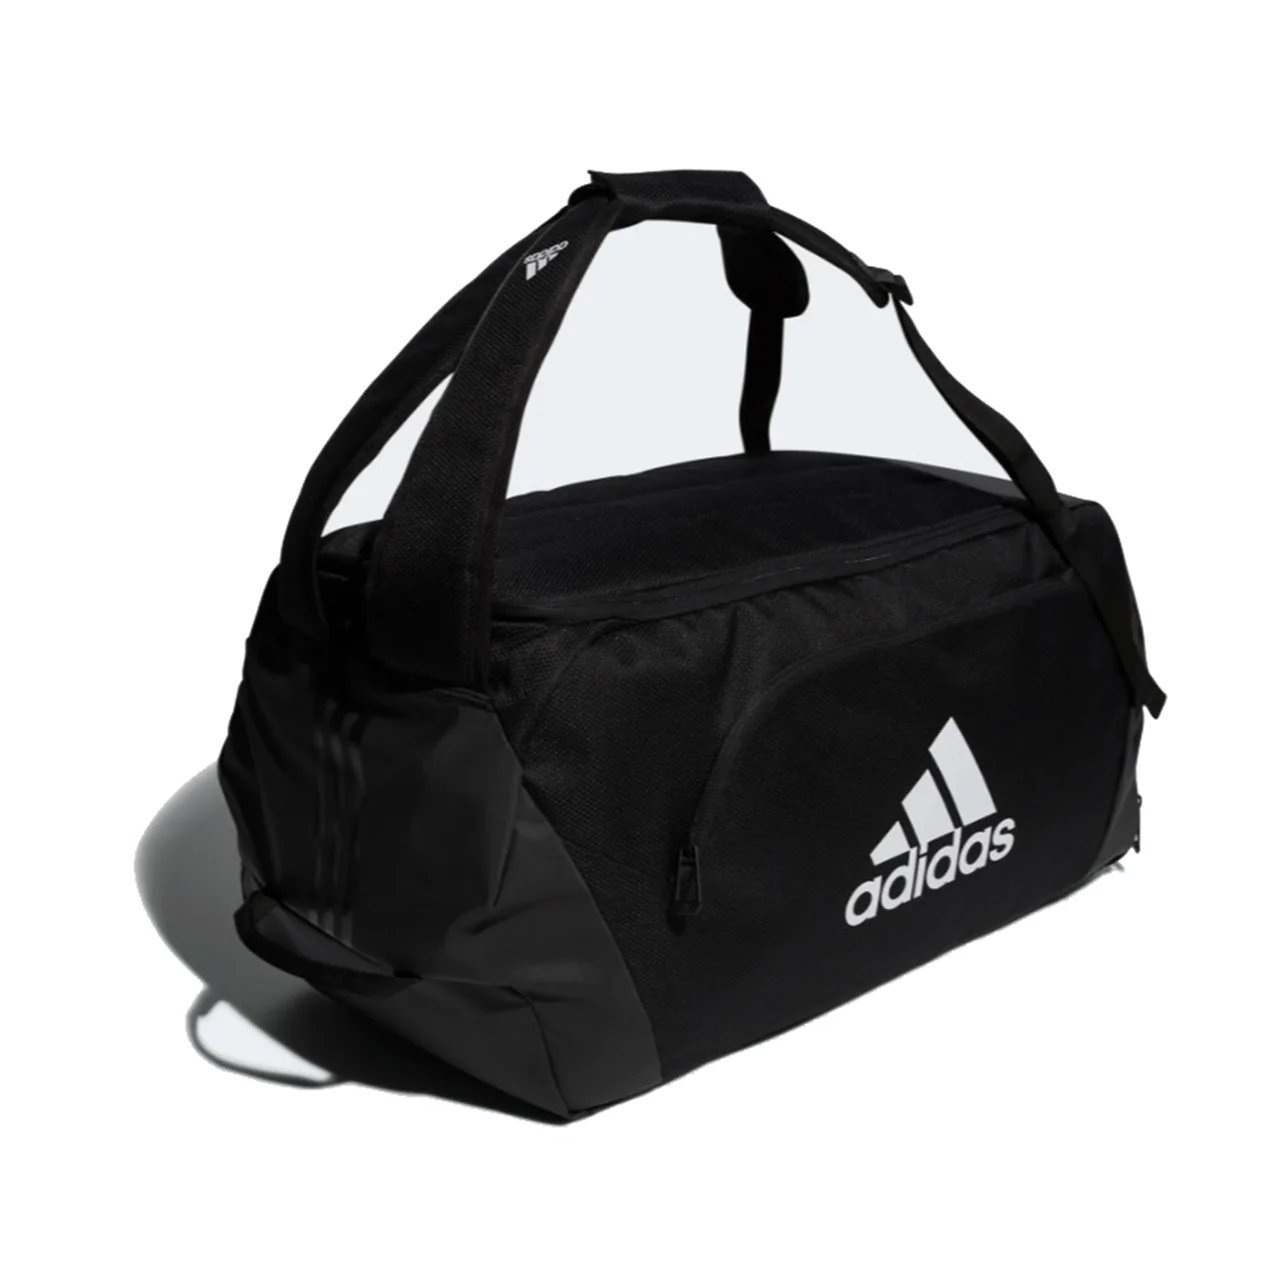 Adidas Duffel Bag Black